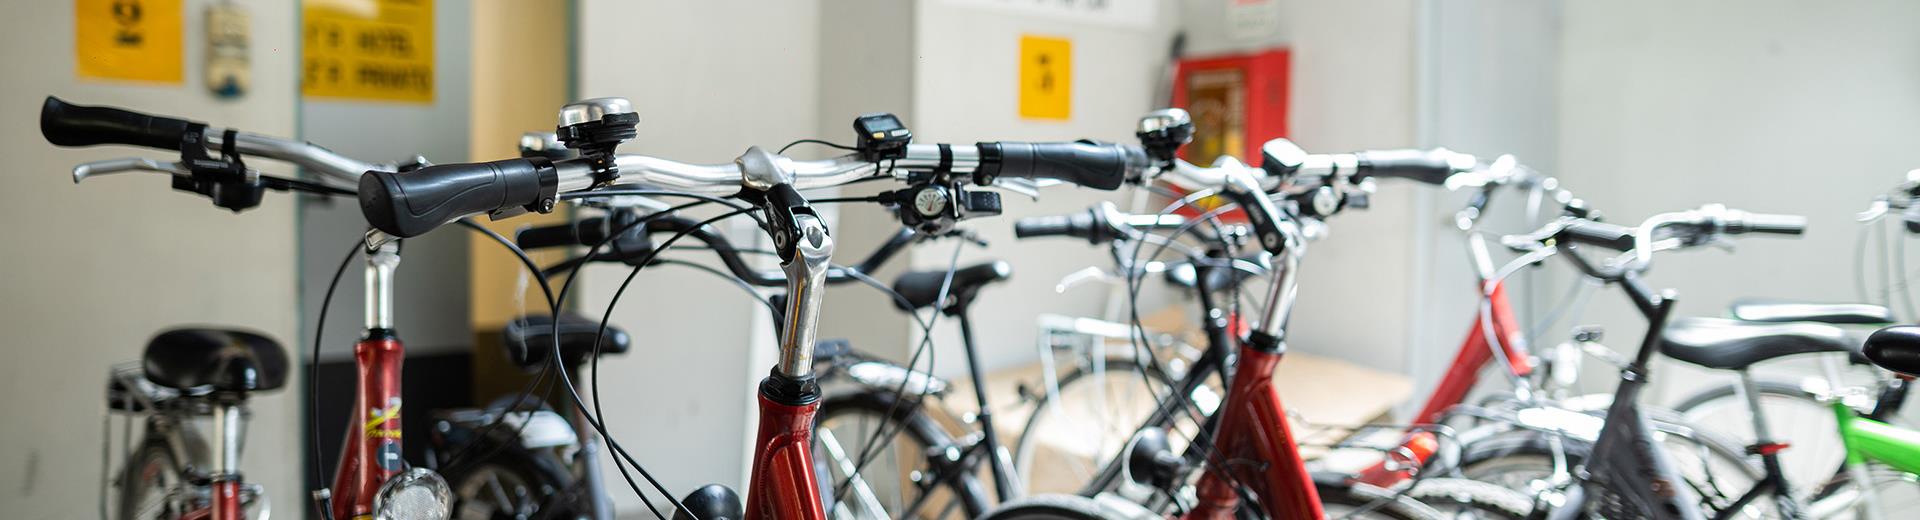 Prenota le bici dell''Executive Hotel a Torino centro e visita la città pedalando